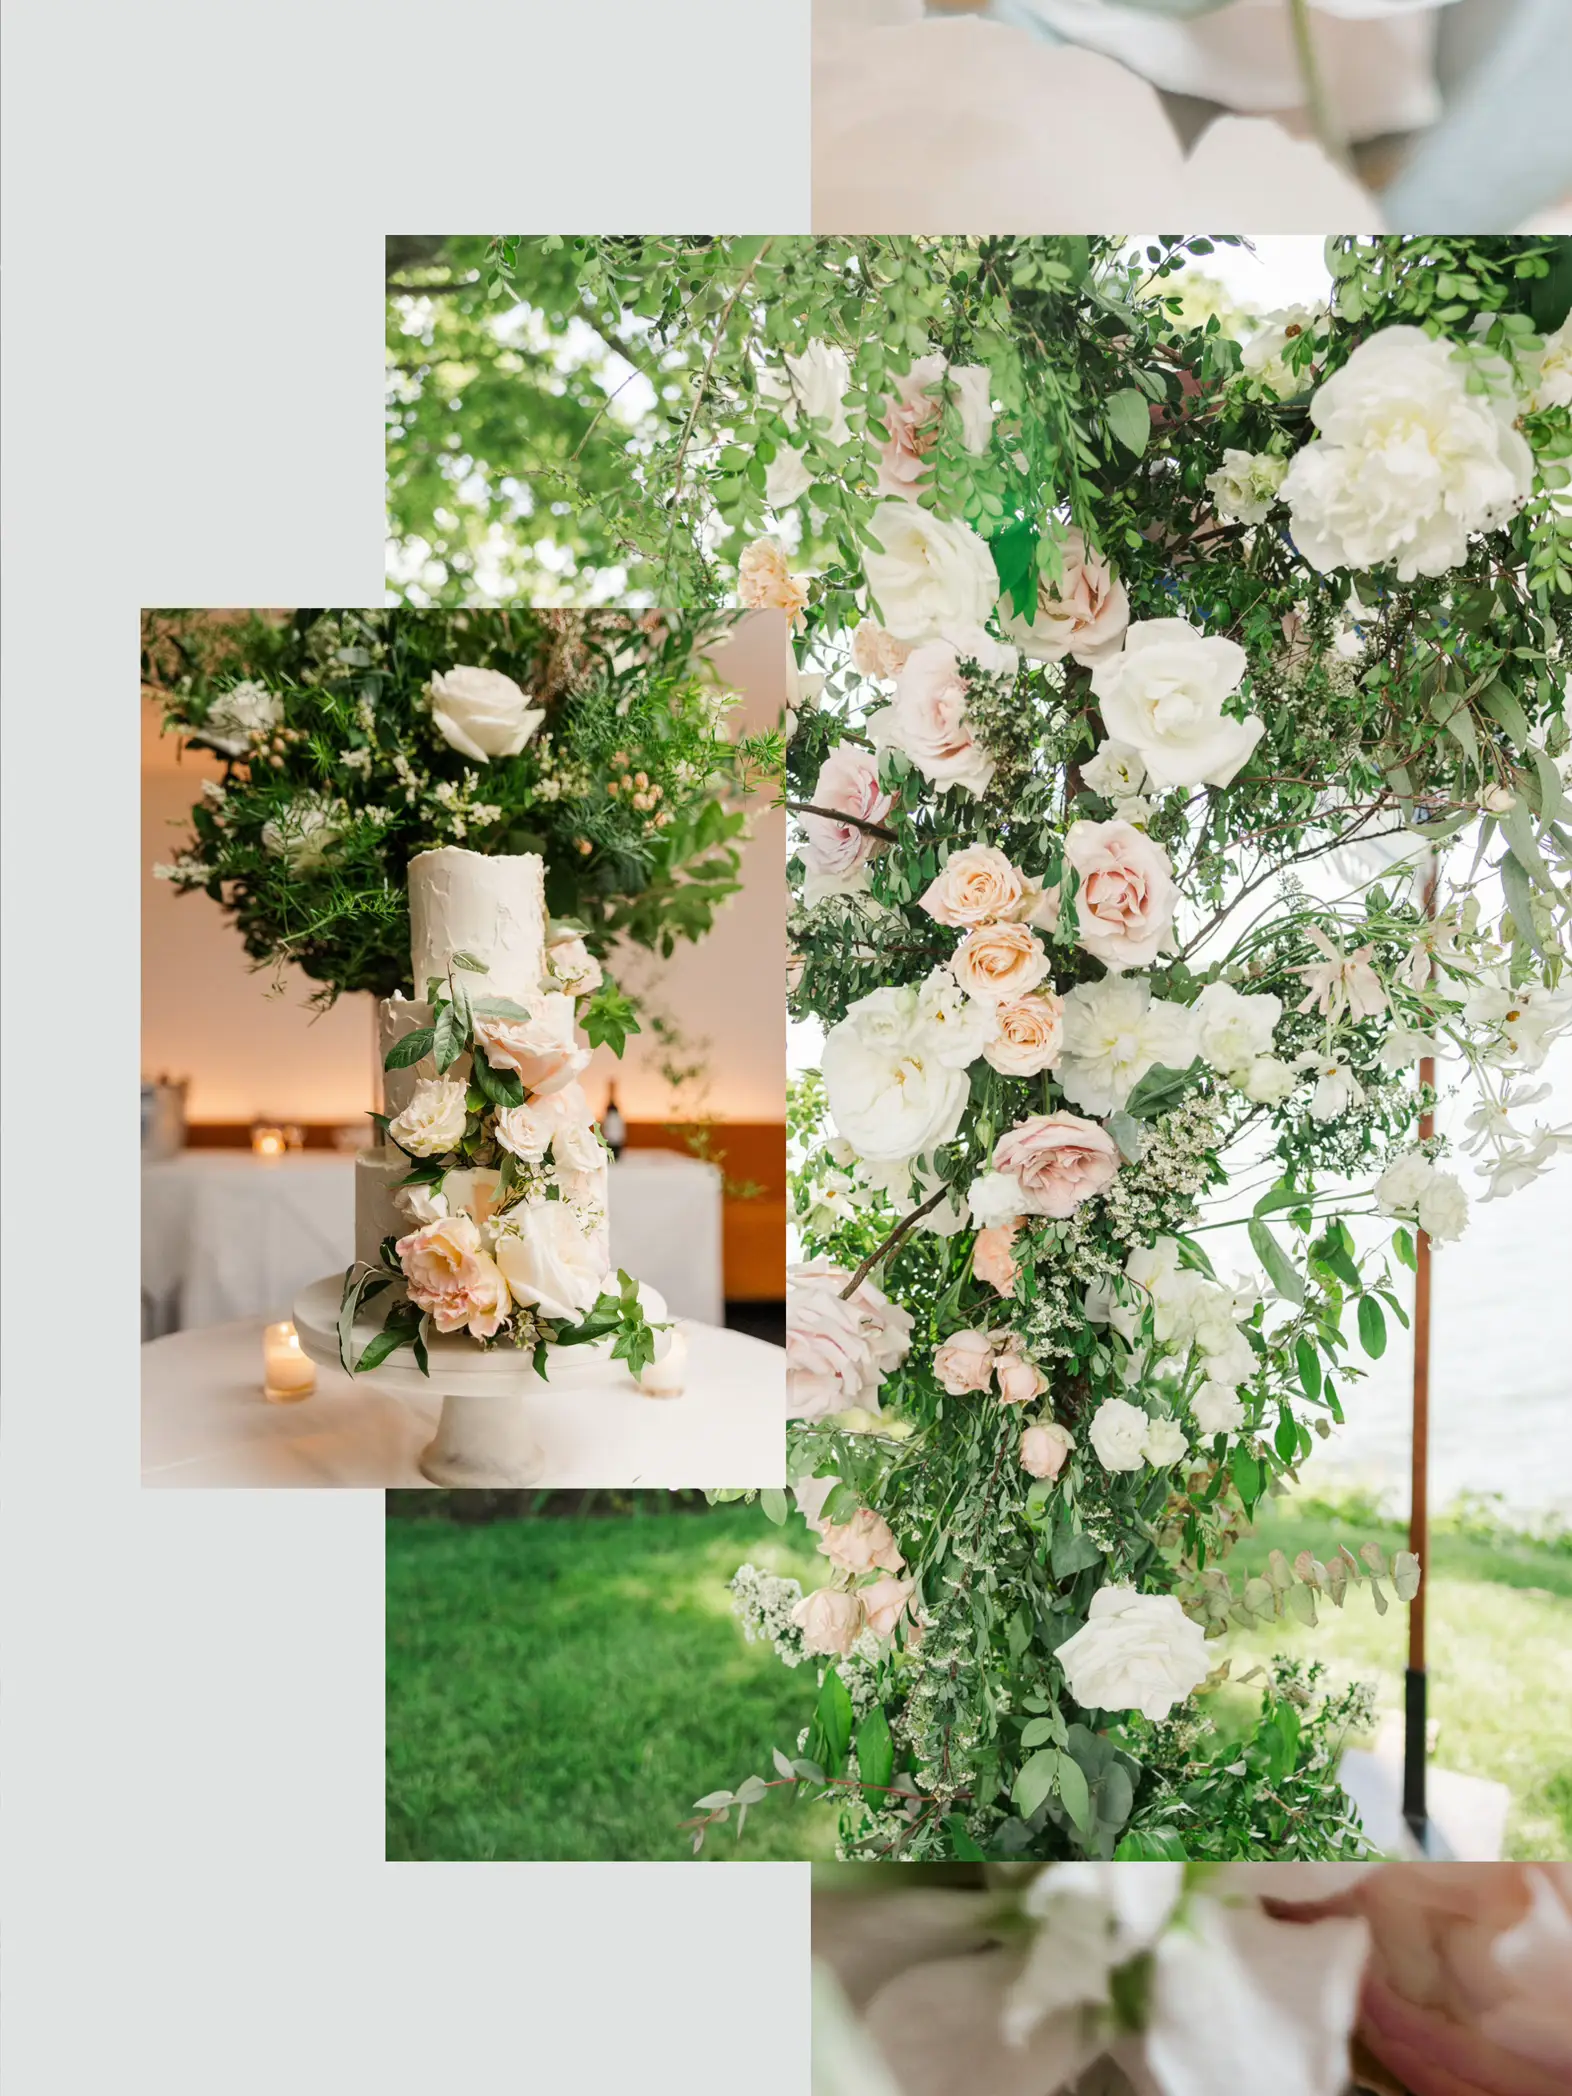 Best Floral Arrangements for Weddings - Lemon8 Search